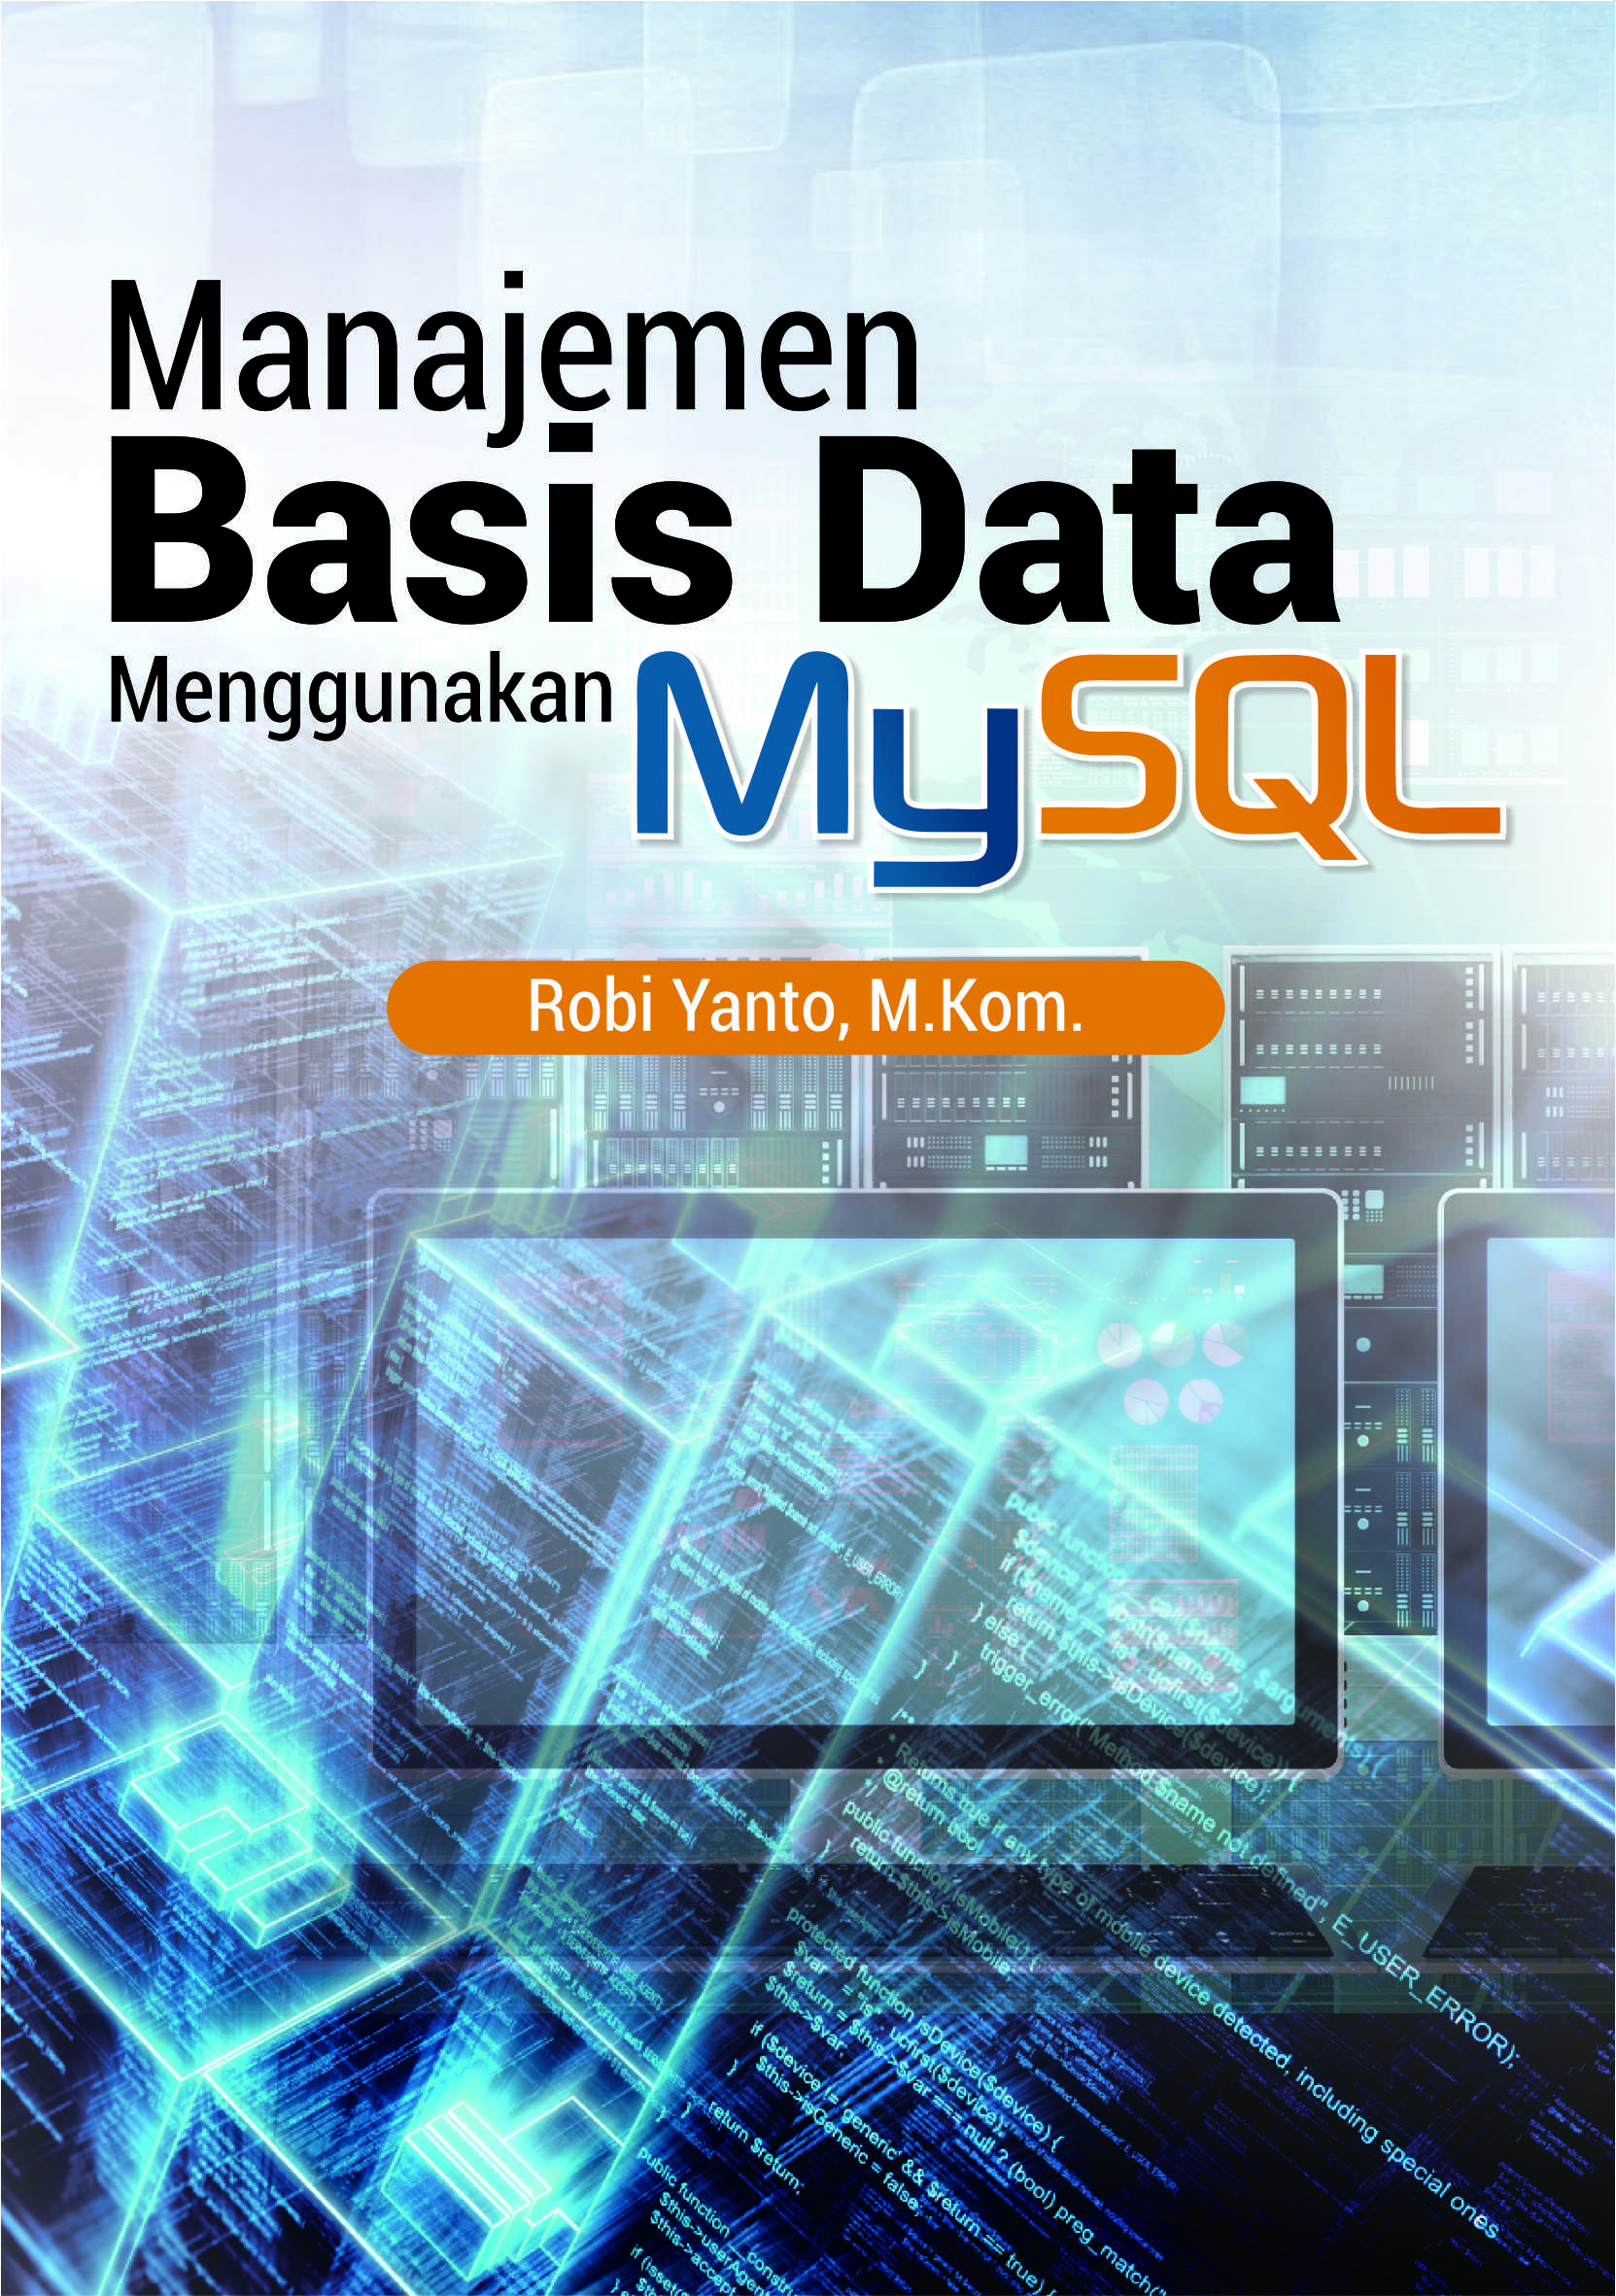 Manajemen Basis Data Menggunakan Mysql Sumber Elektronis 2935